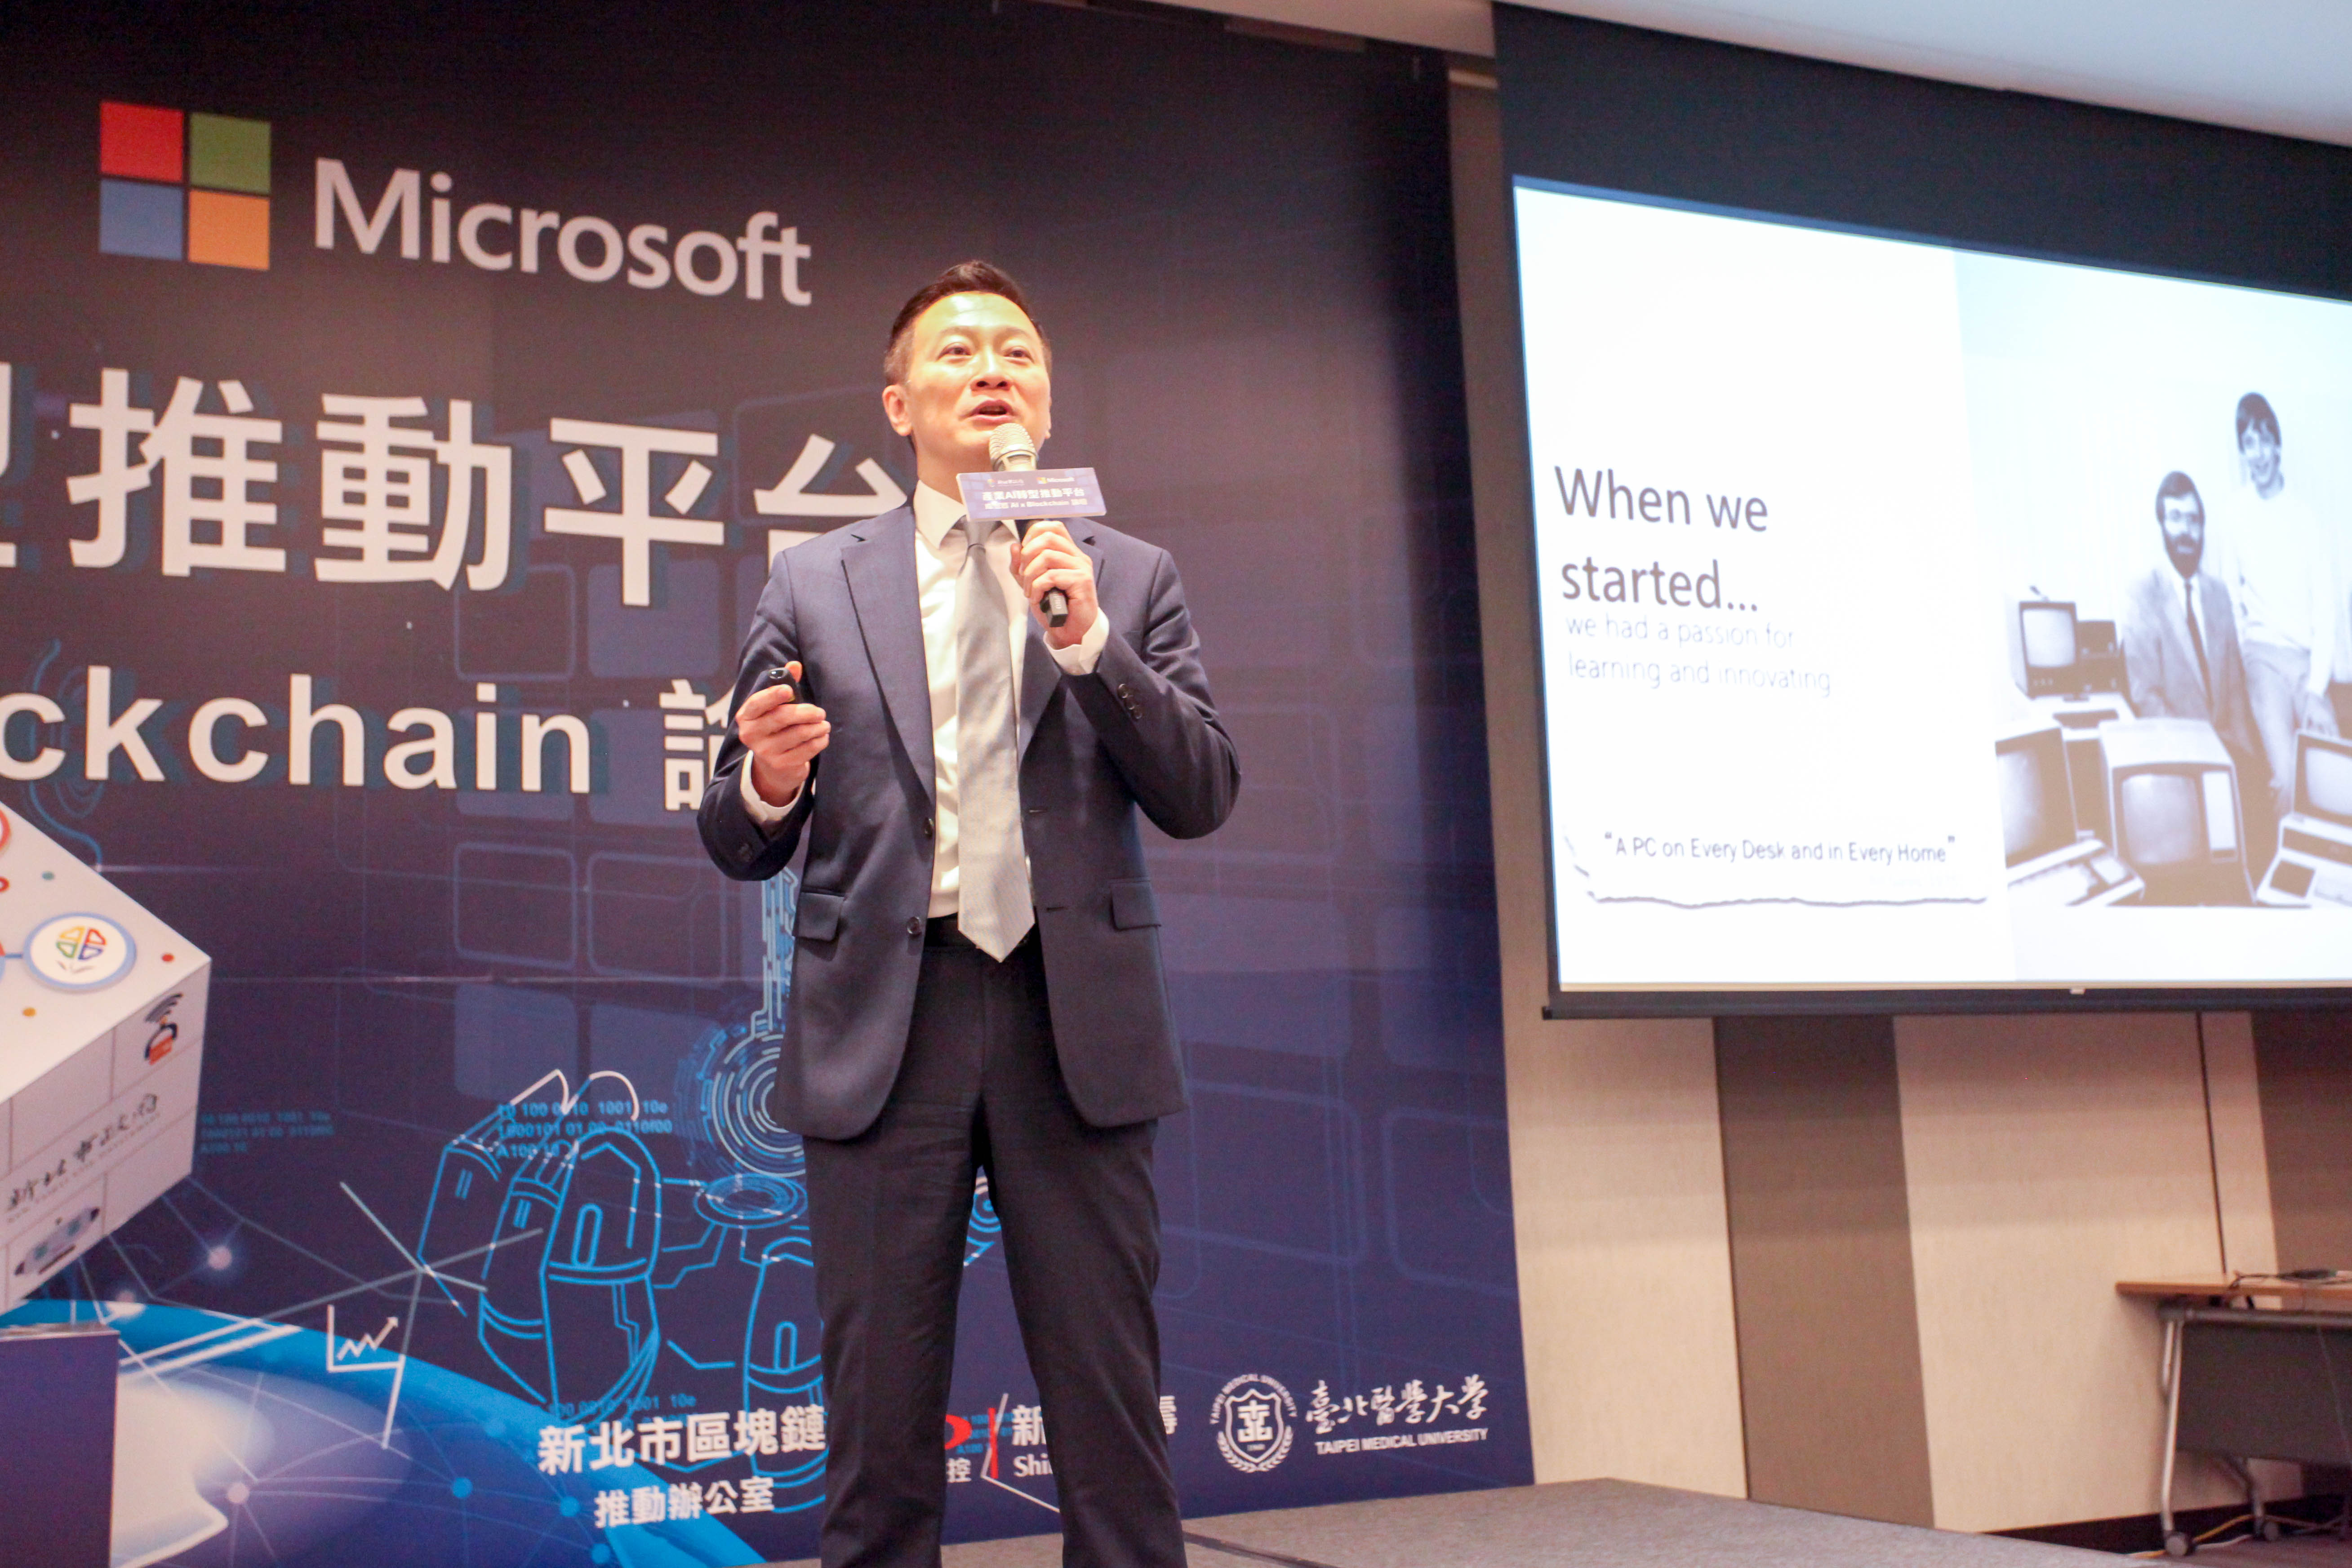 台灣微軟首席技術與策略長丁維揚講解以人工智慧驅動數位轉型的重要關鍵